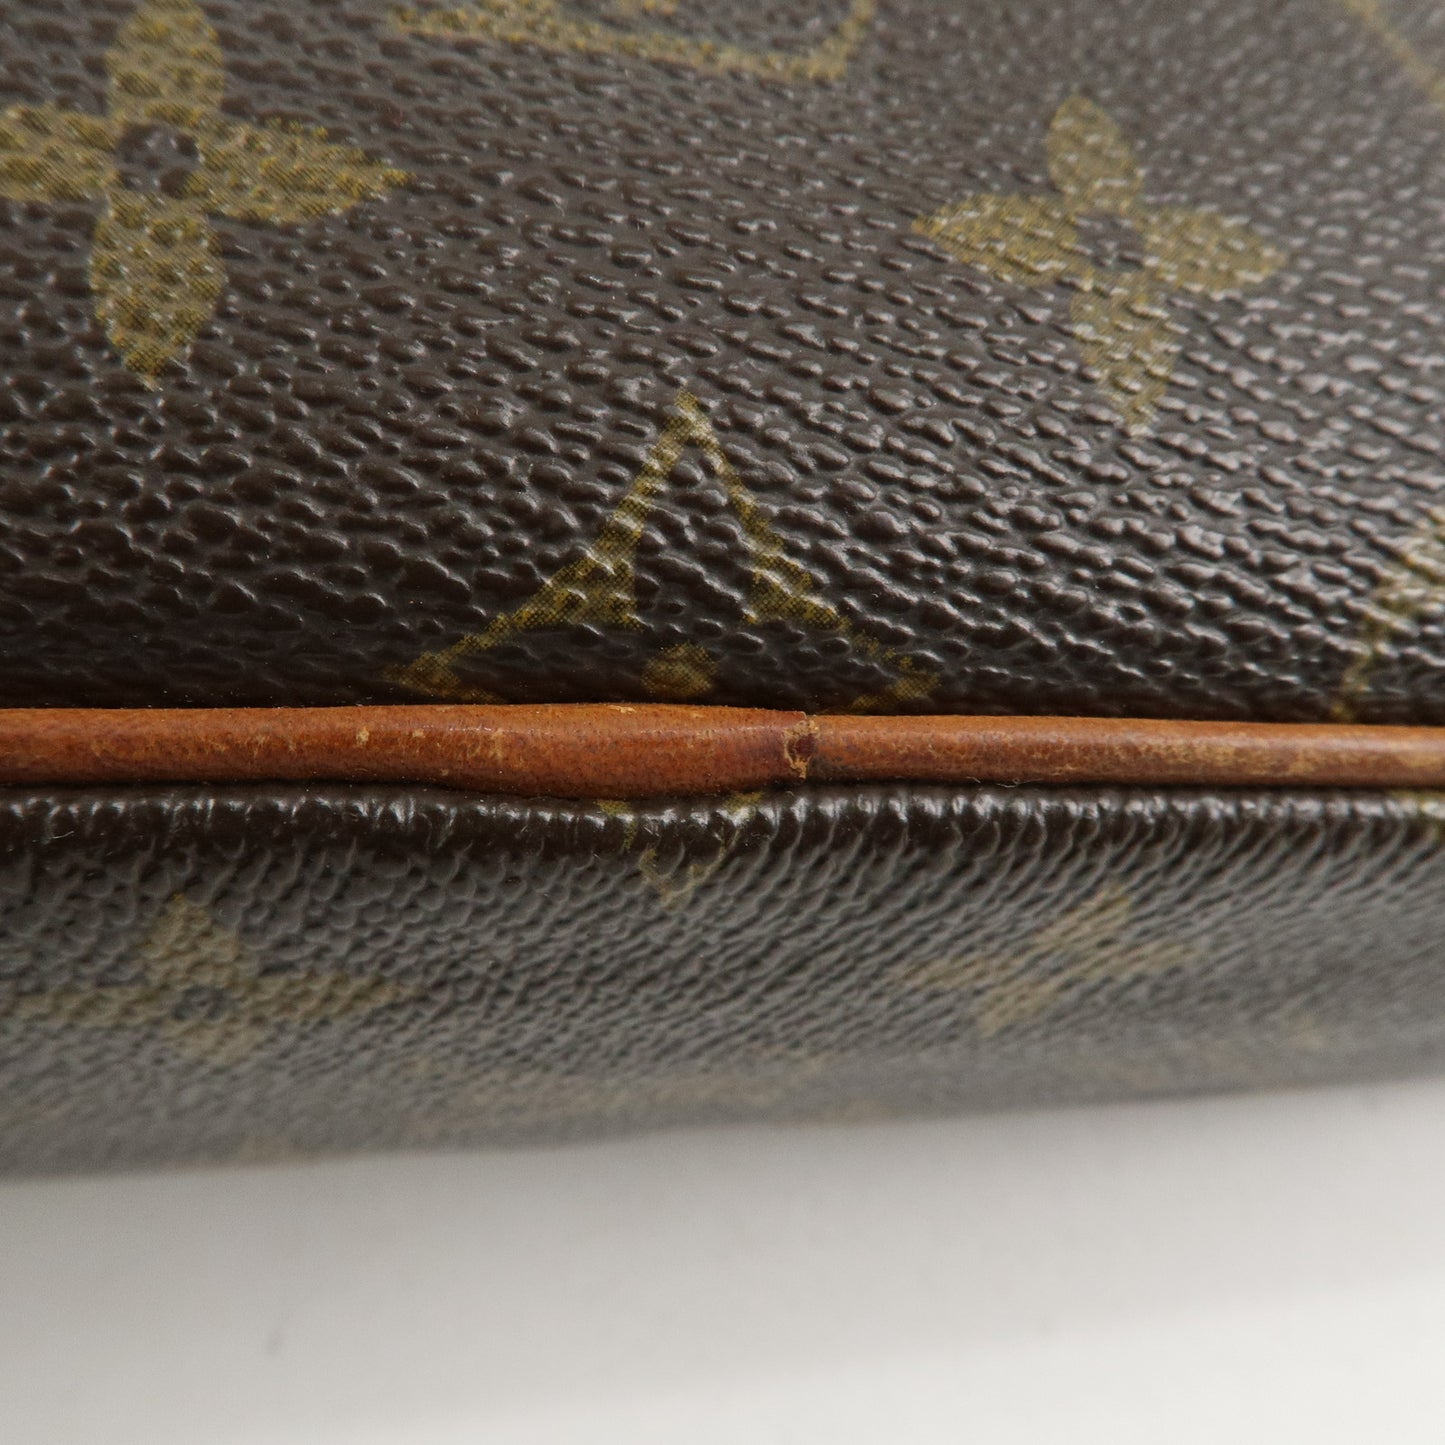 Louis Vuitton Monogram Compiegne 28 Pouch Clutch Bag M51845